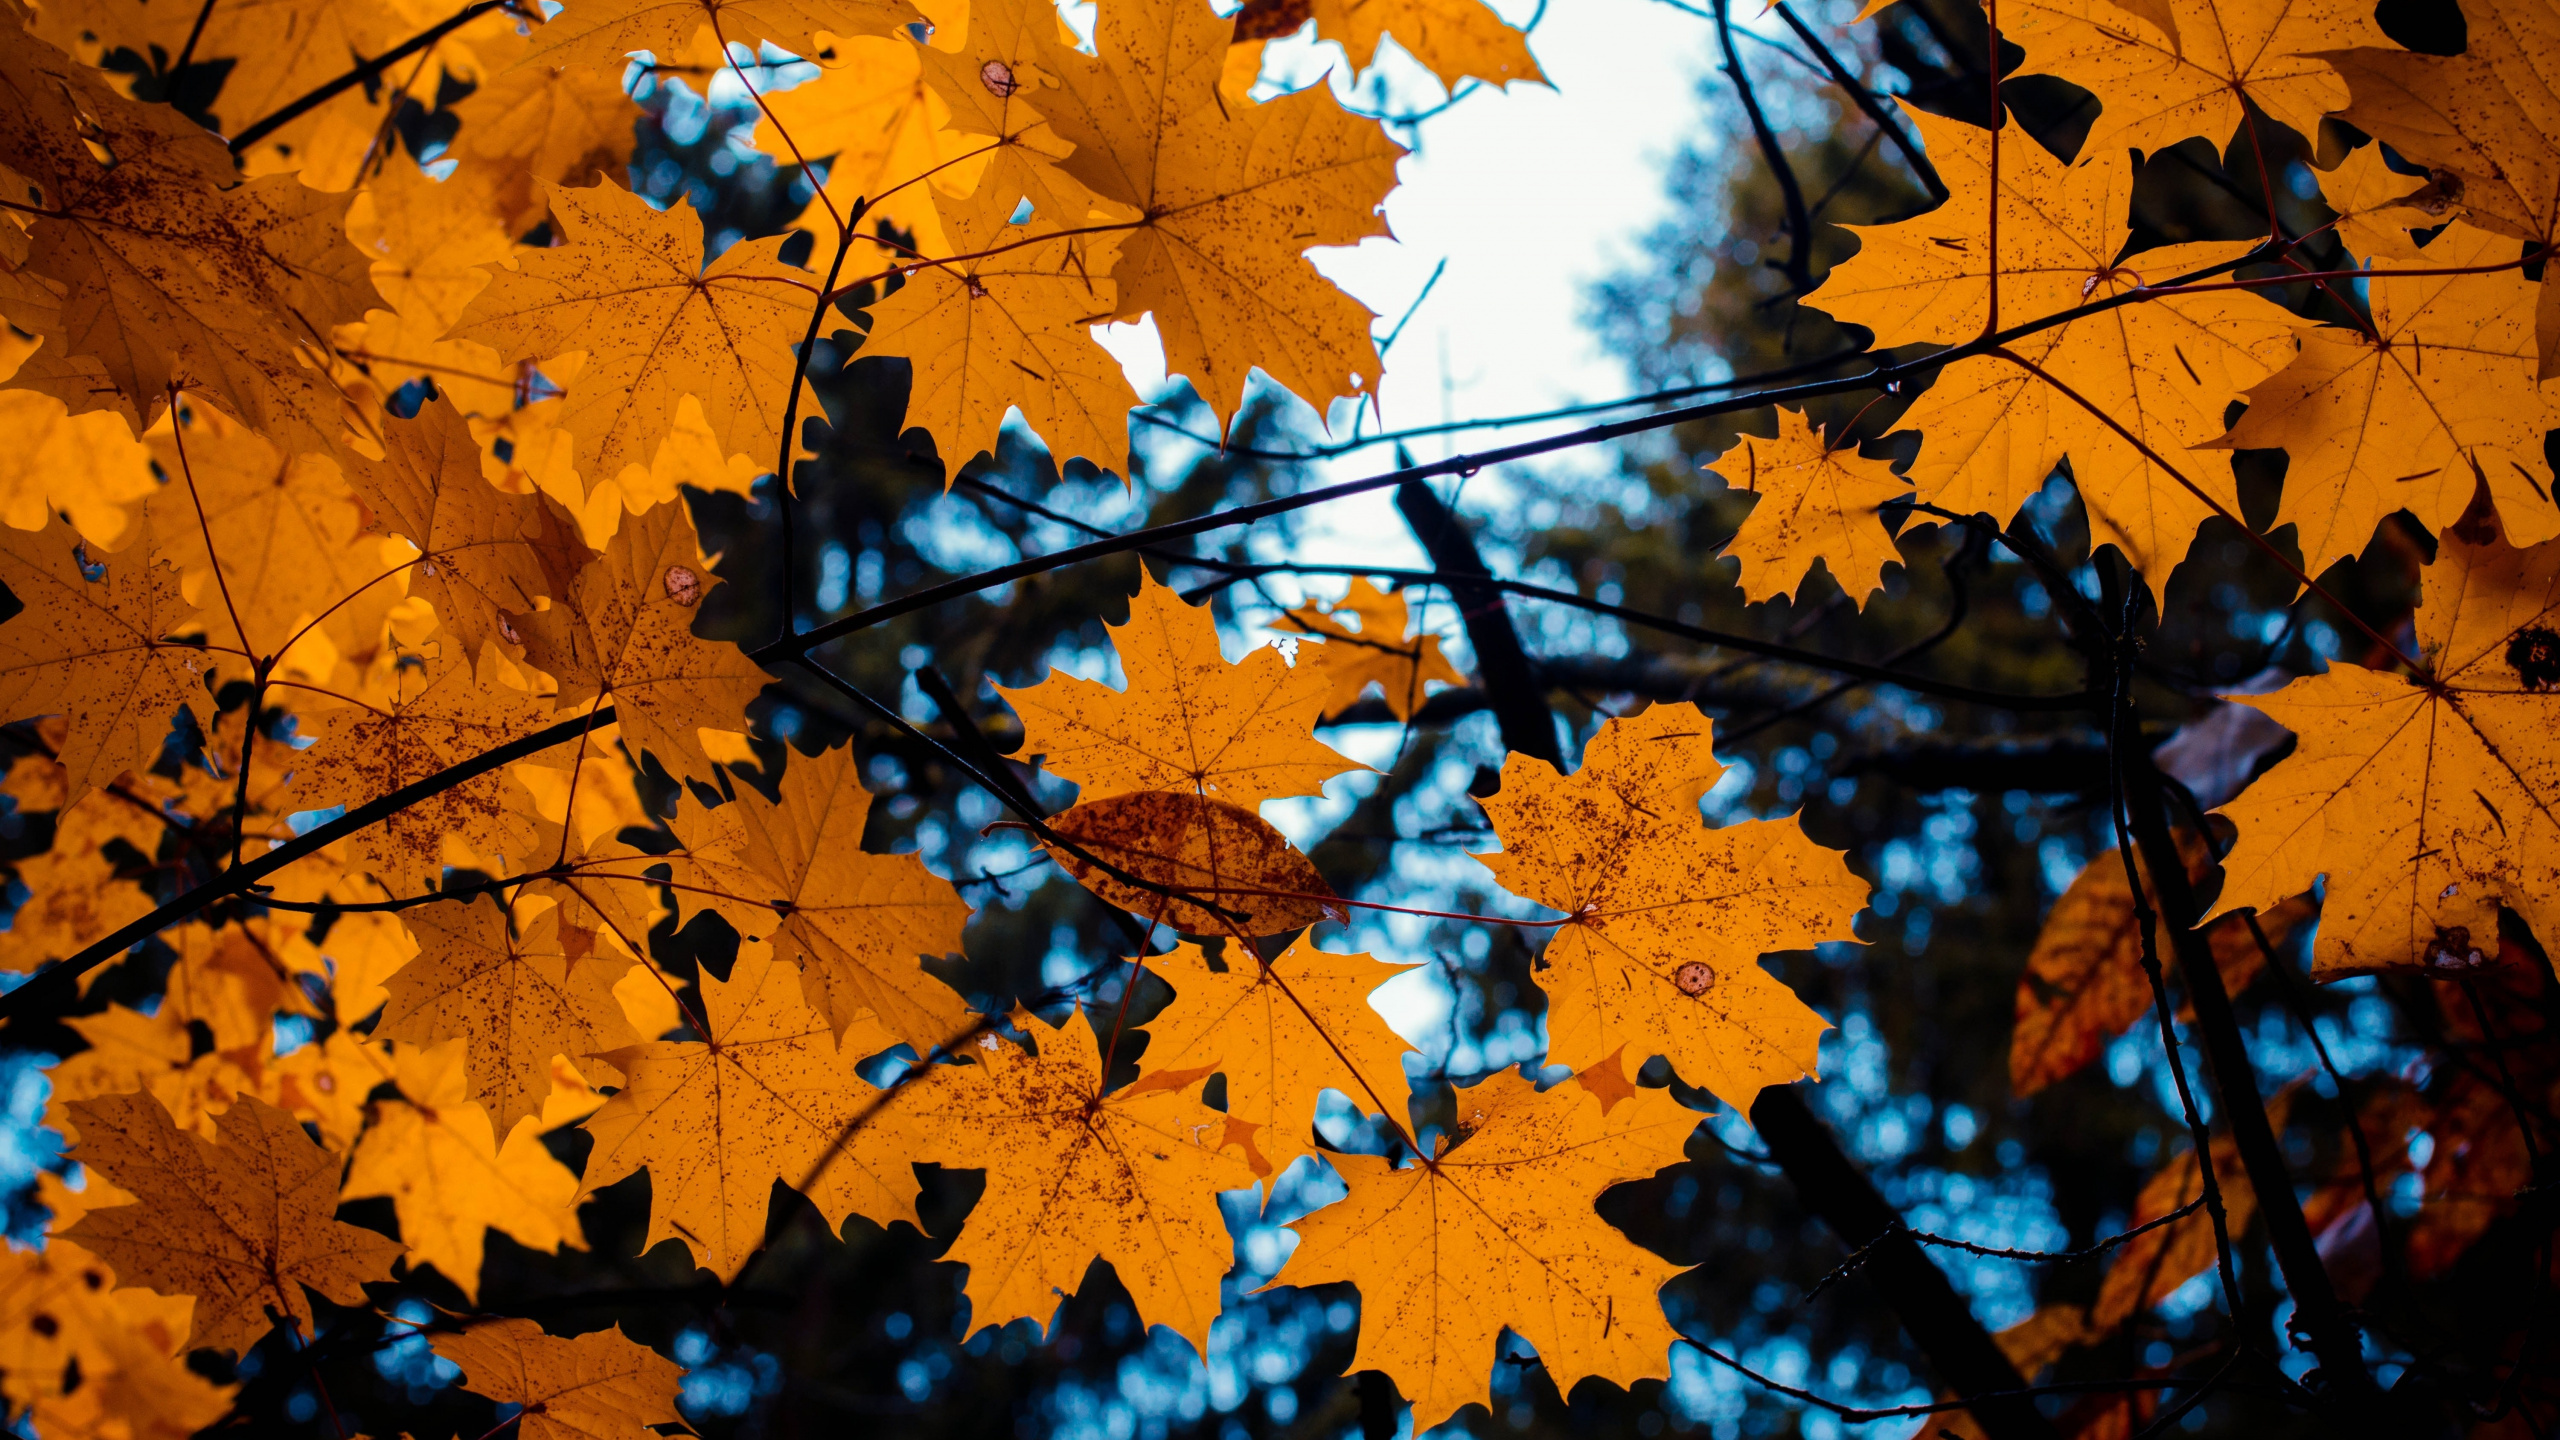 性质, 枫叶, 落叶, 秋天的叶的颜色, 枫 壁纸 2560x1440 允许